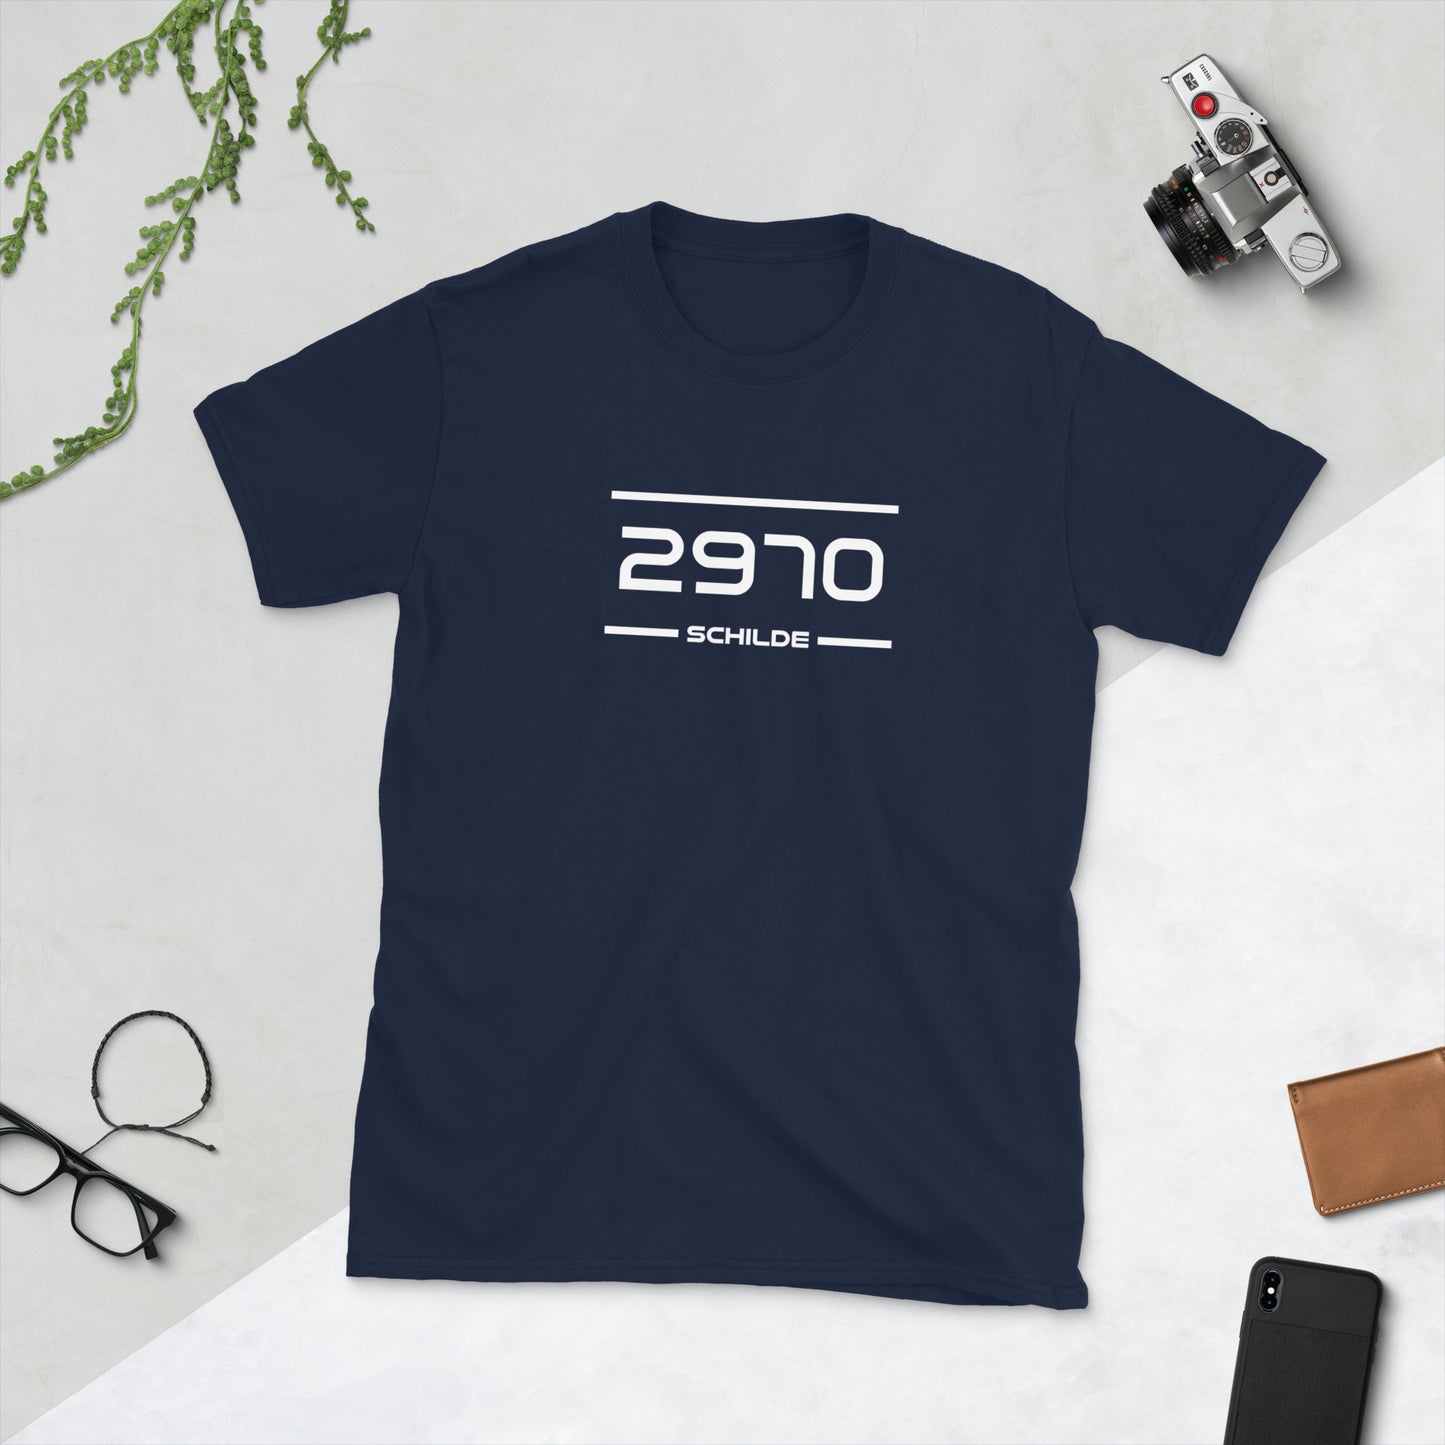 Tshirt - 2970 - Schilde